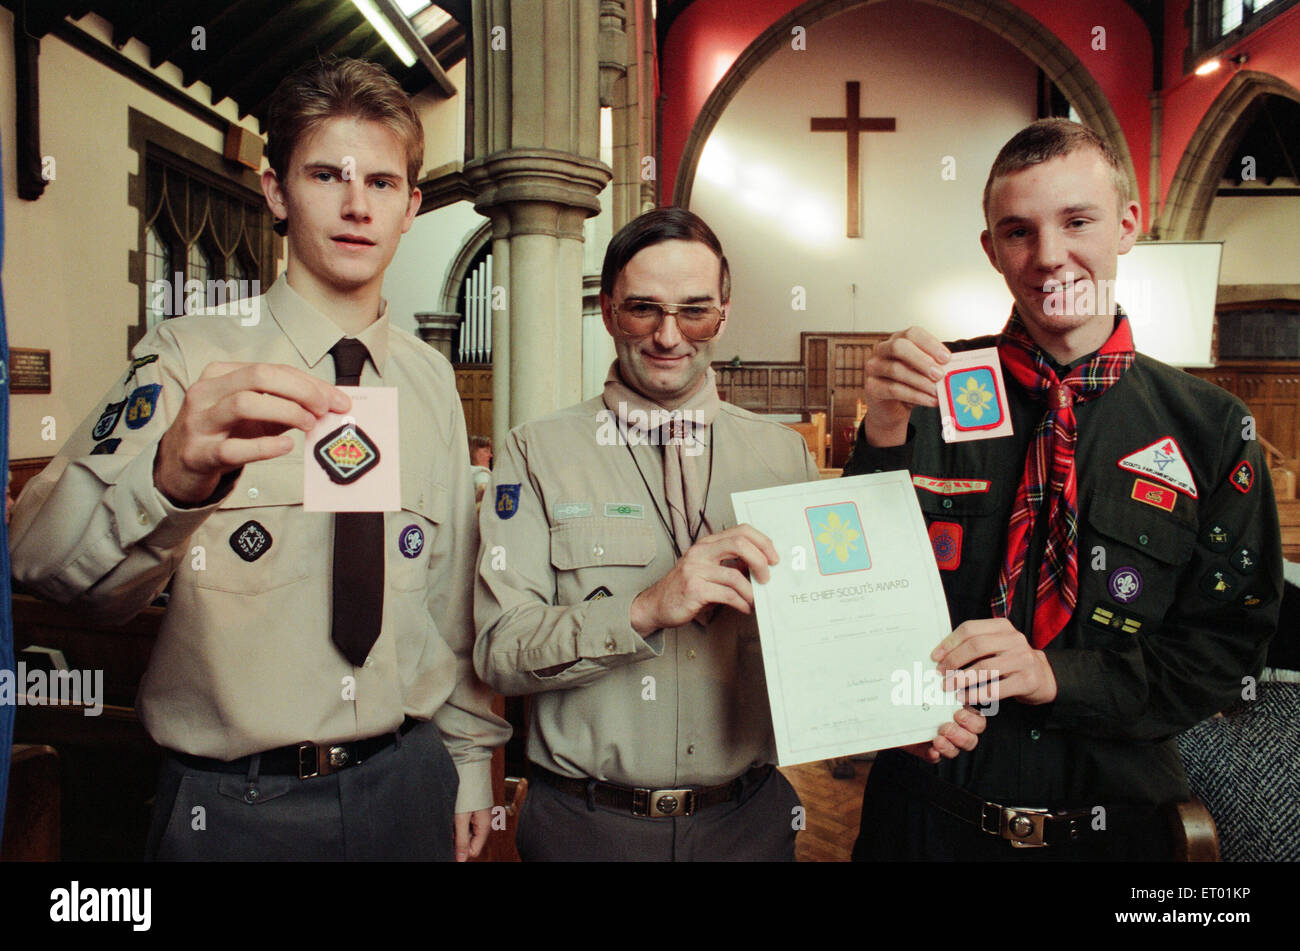 La Contea di Assistente Commissario David Clark (centro) si congratula con gli scout Paul Barker (l) e Edward Bradley sulla vincita top Premi scouting. 13 ottobre 1996. Foto Stock